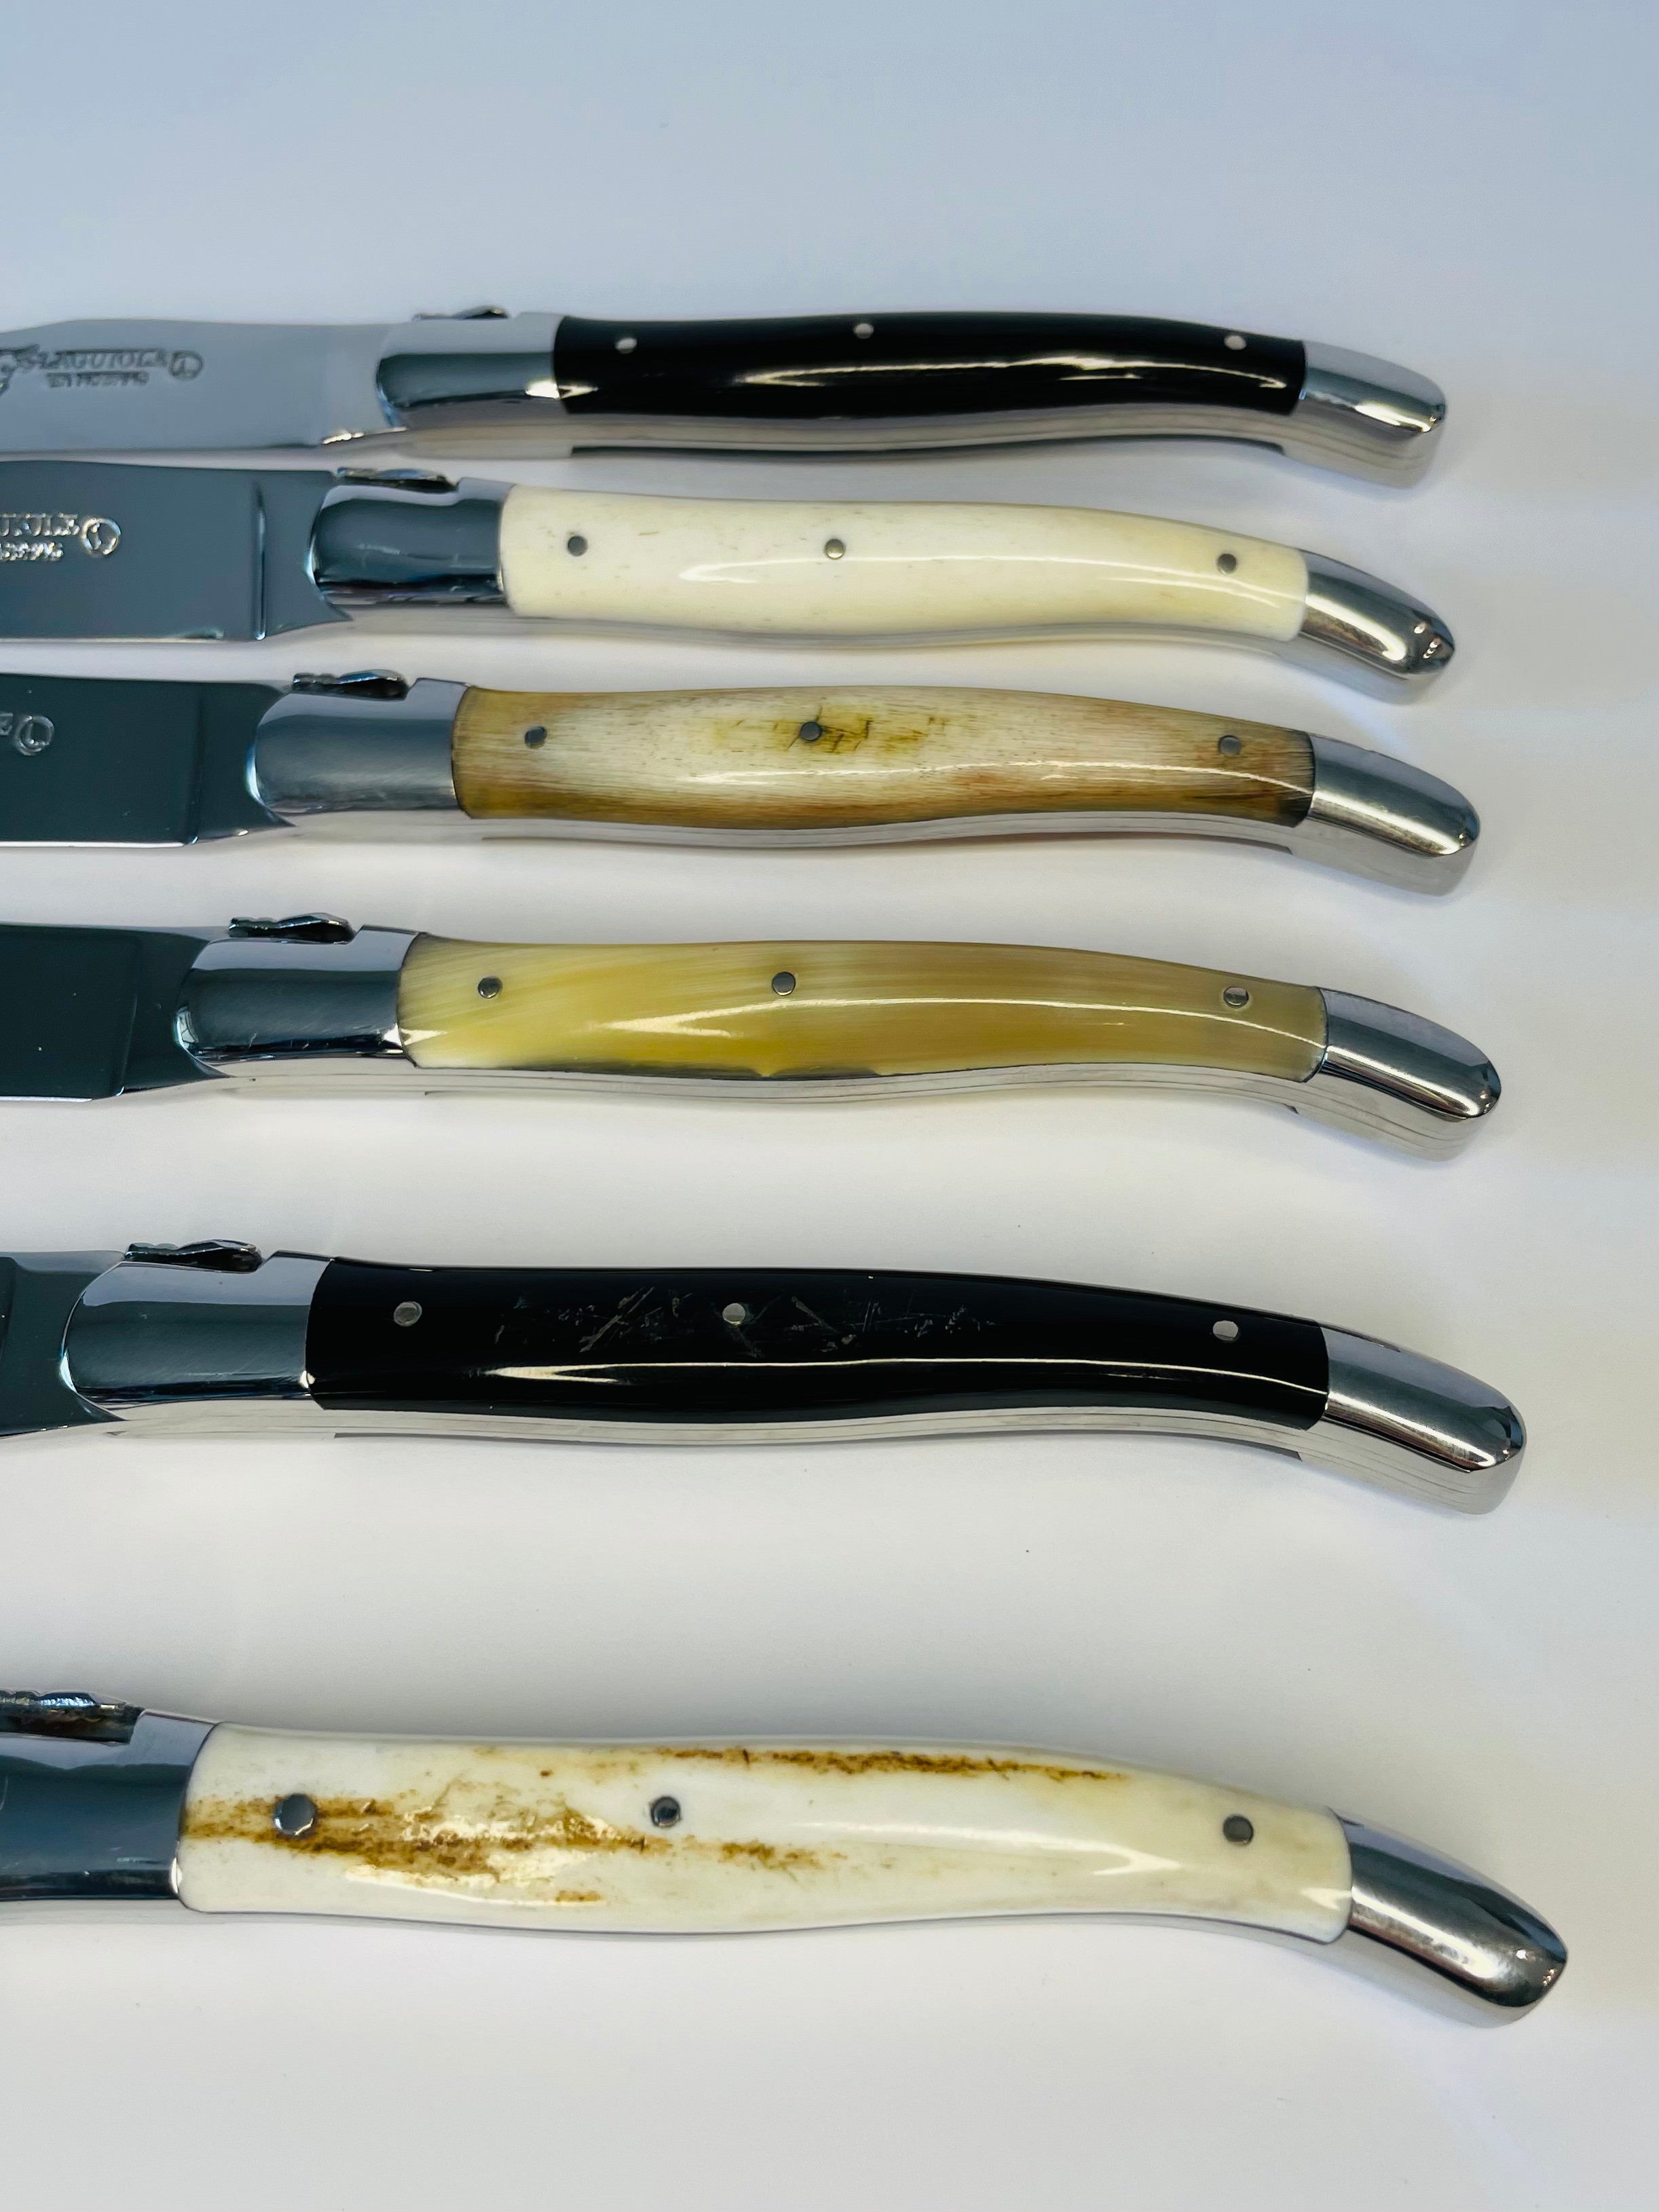 Laguiole Steak Knives Set of 6 – Cattle Bone